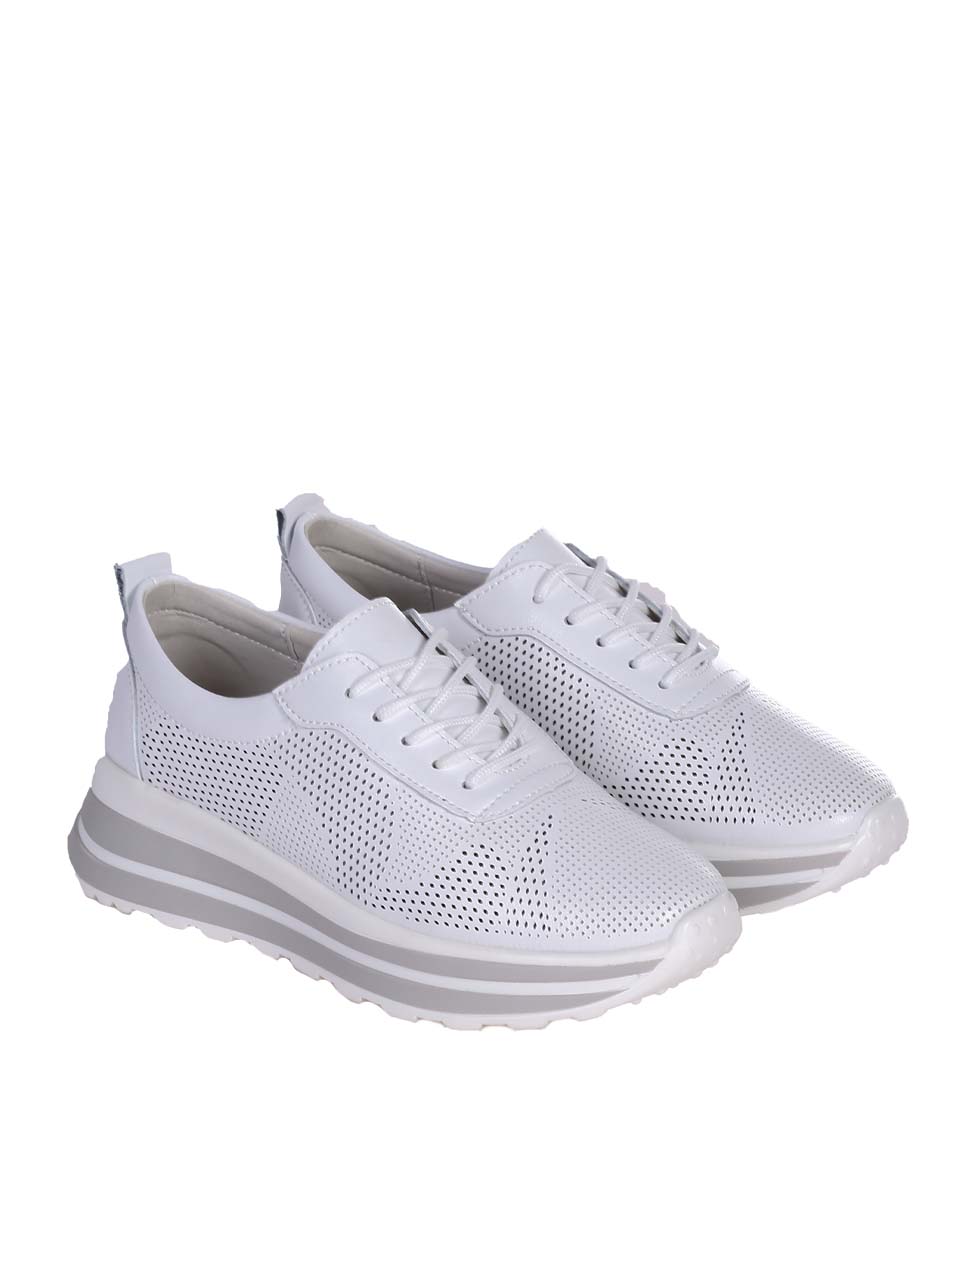 Ежедневни дамски обувки от естествена кожа в бяло 3AF-24241 white